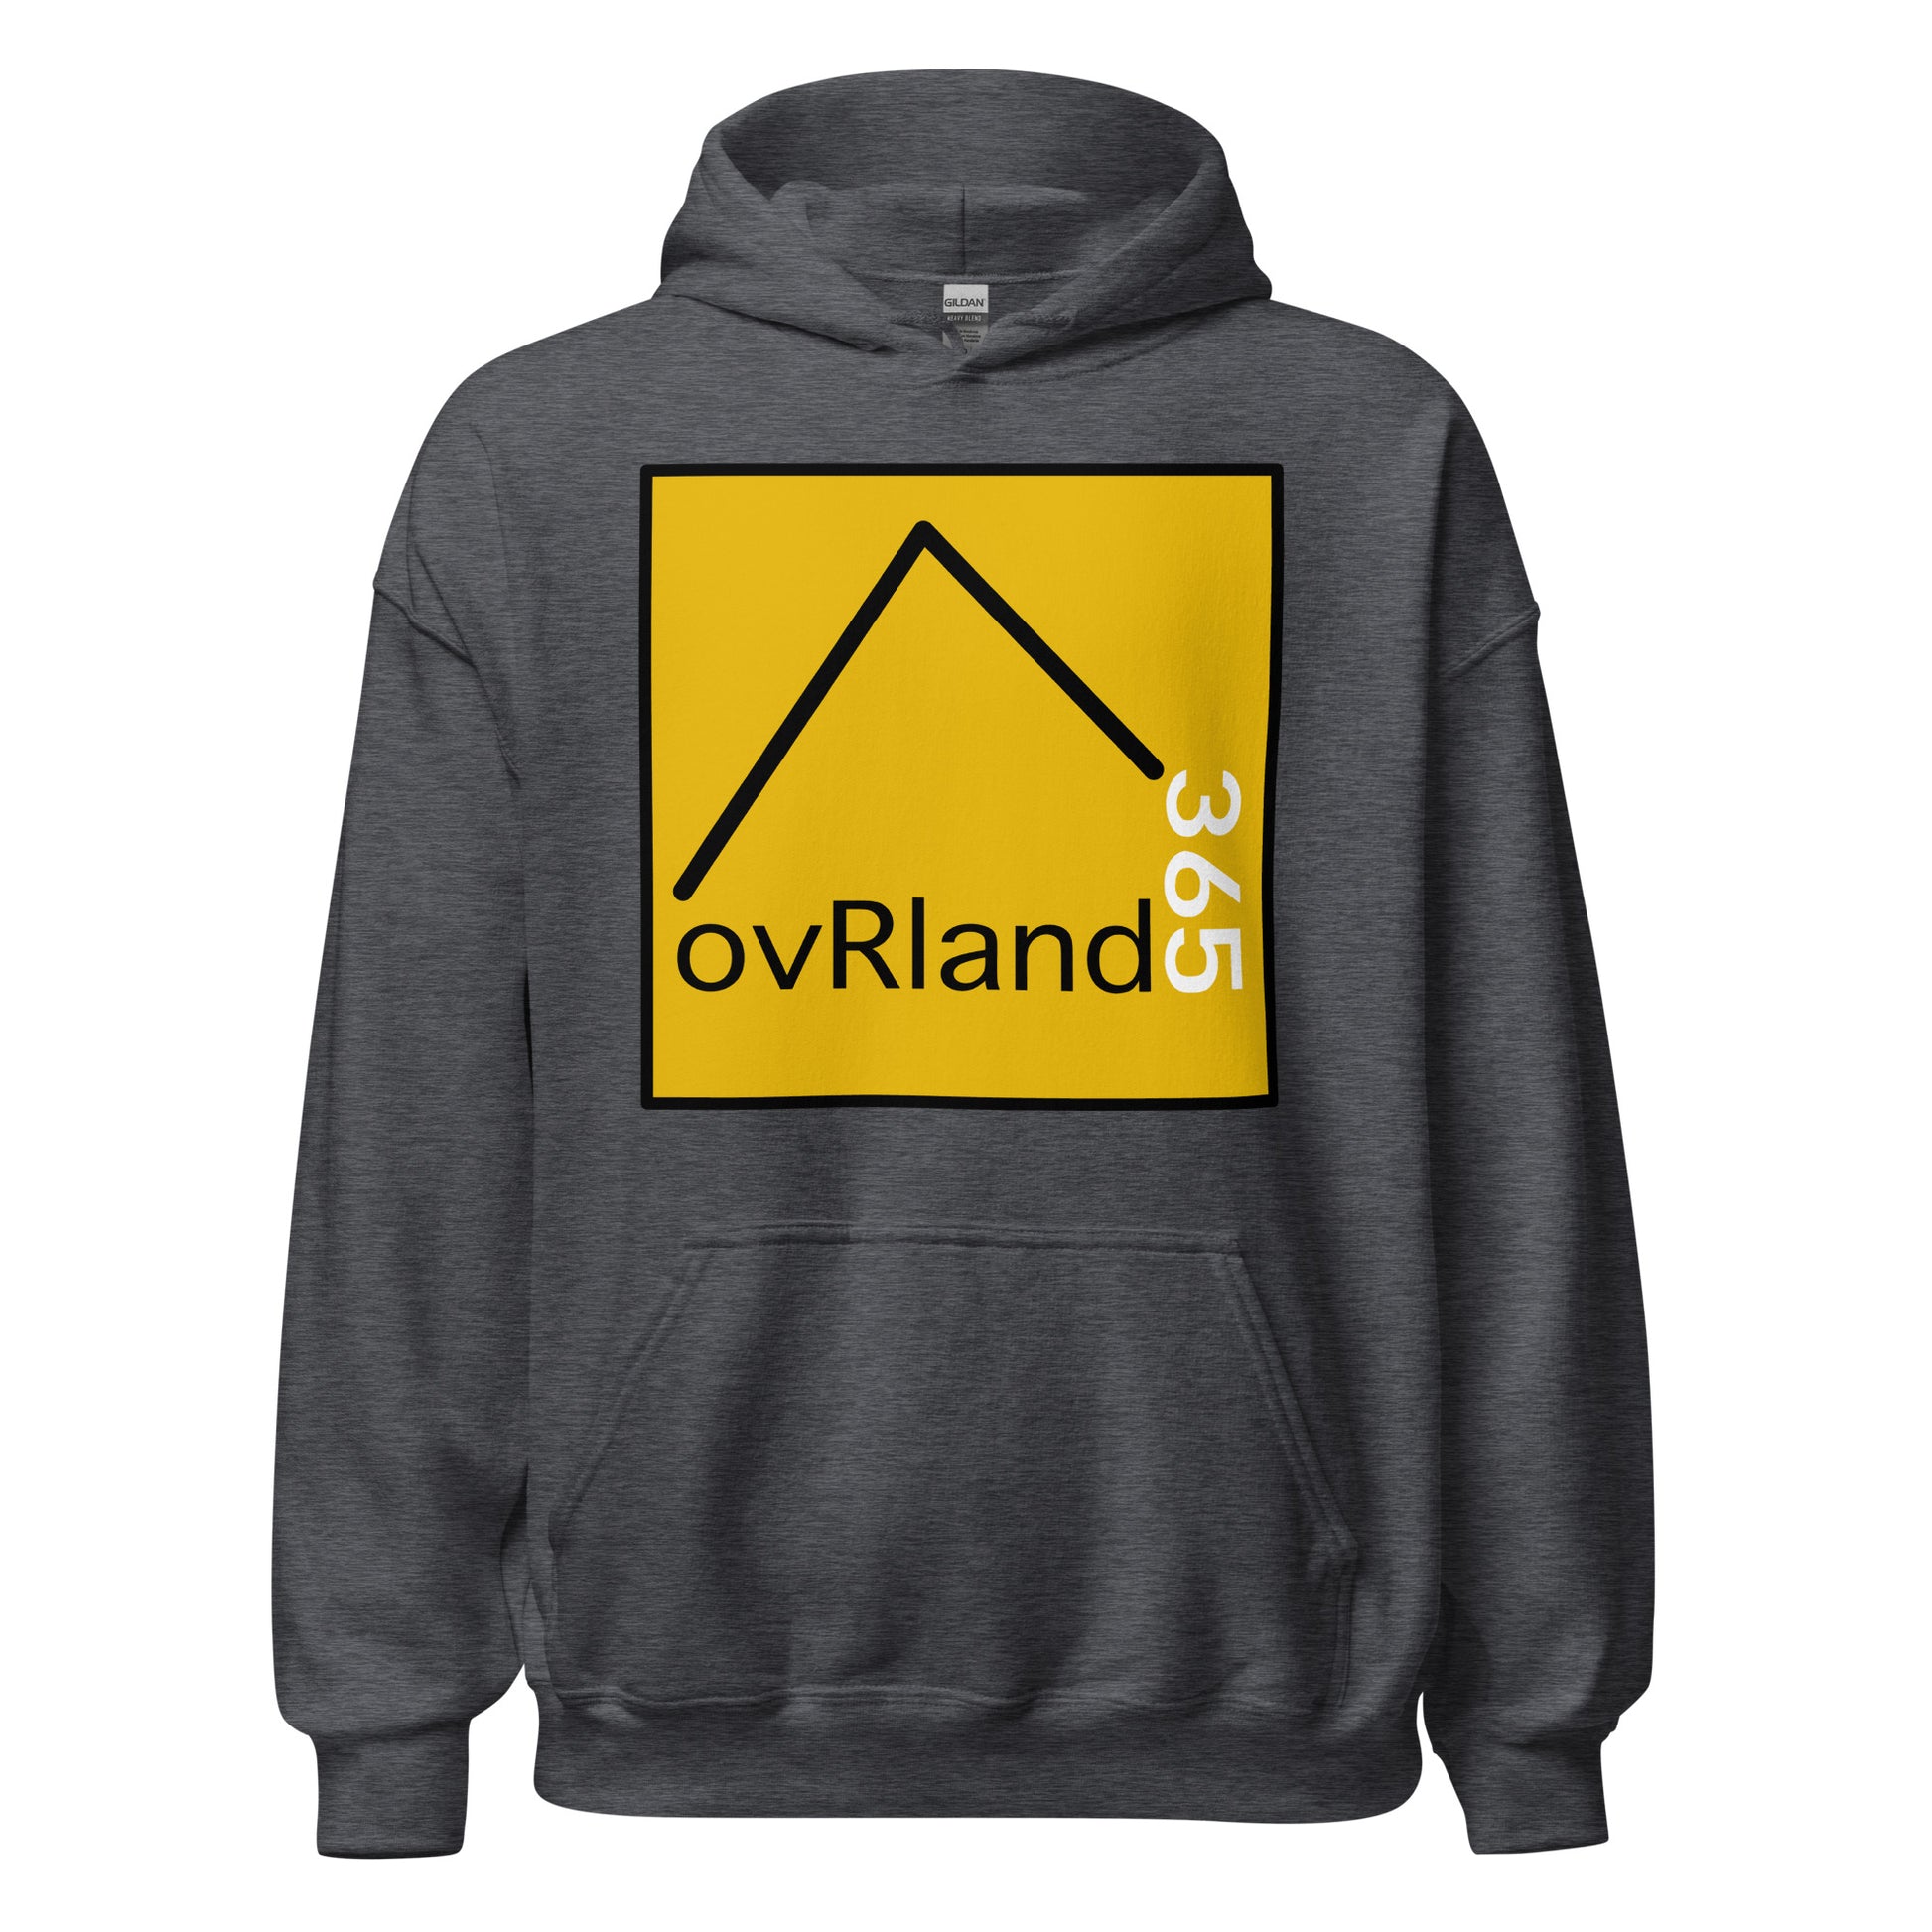 Classic overland hoodie. ovRland365. Dark grey. overland365.com